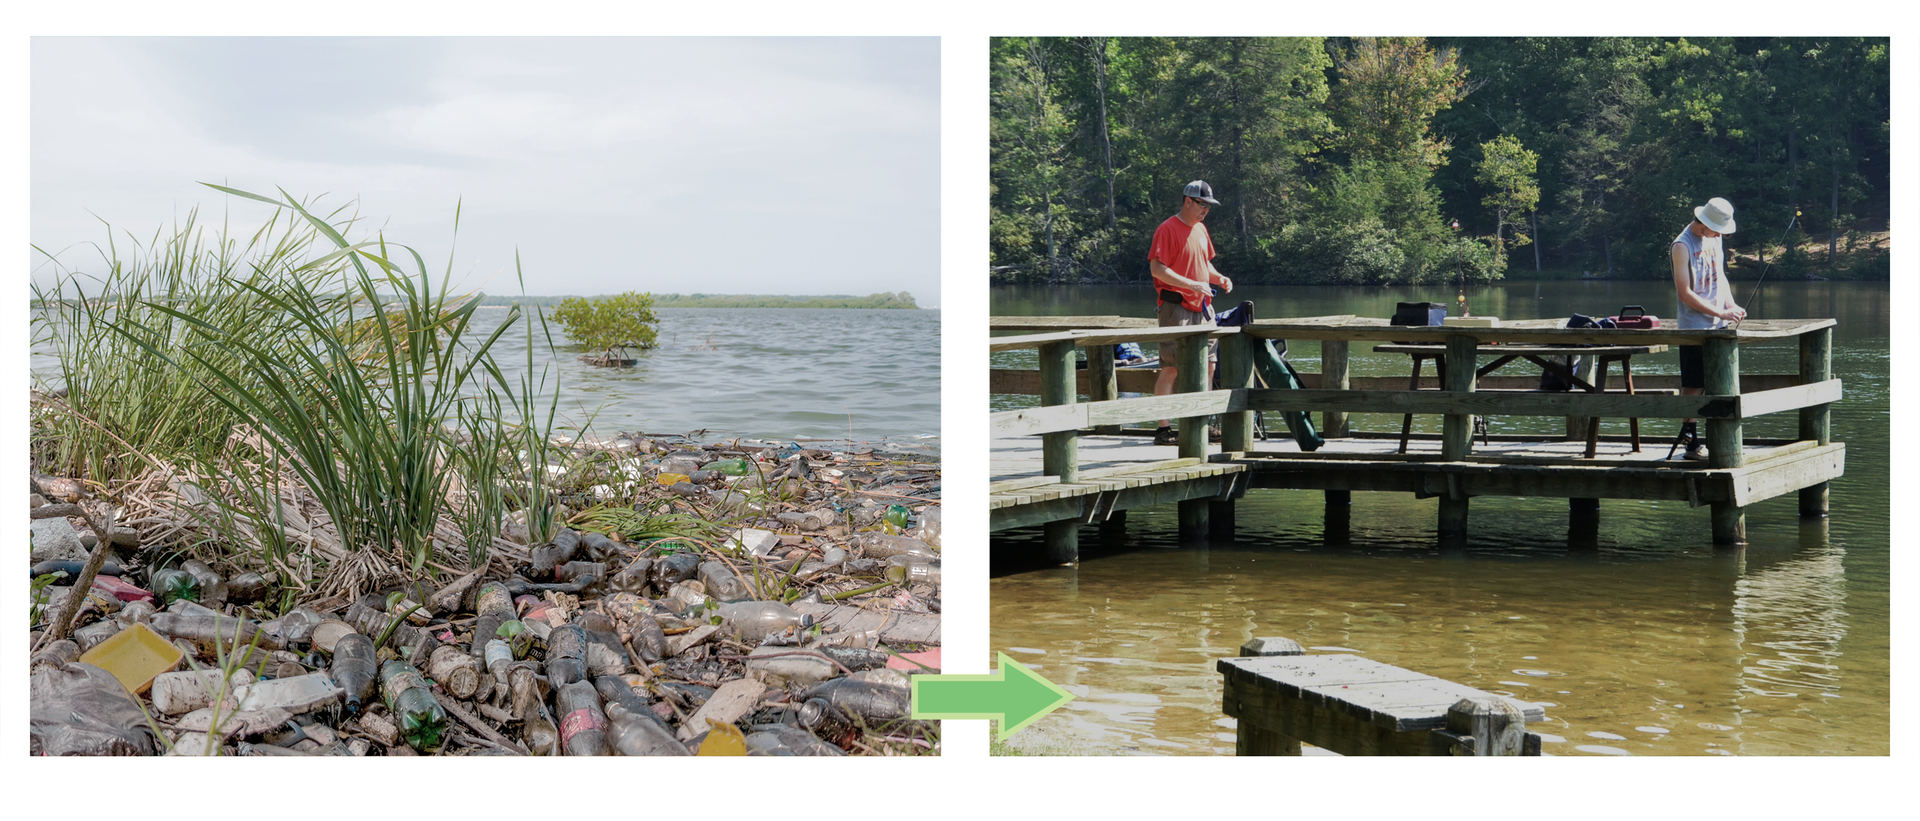 Fotografia po lewej stronie prezentuje zaniedbamy brzeg nad jeziorem. Obok to samo miejsce zagospodarowane przez człowieka. Widoczny pomost na którym stoją wędkarze łowiący ryby.